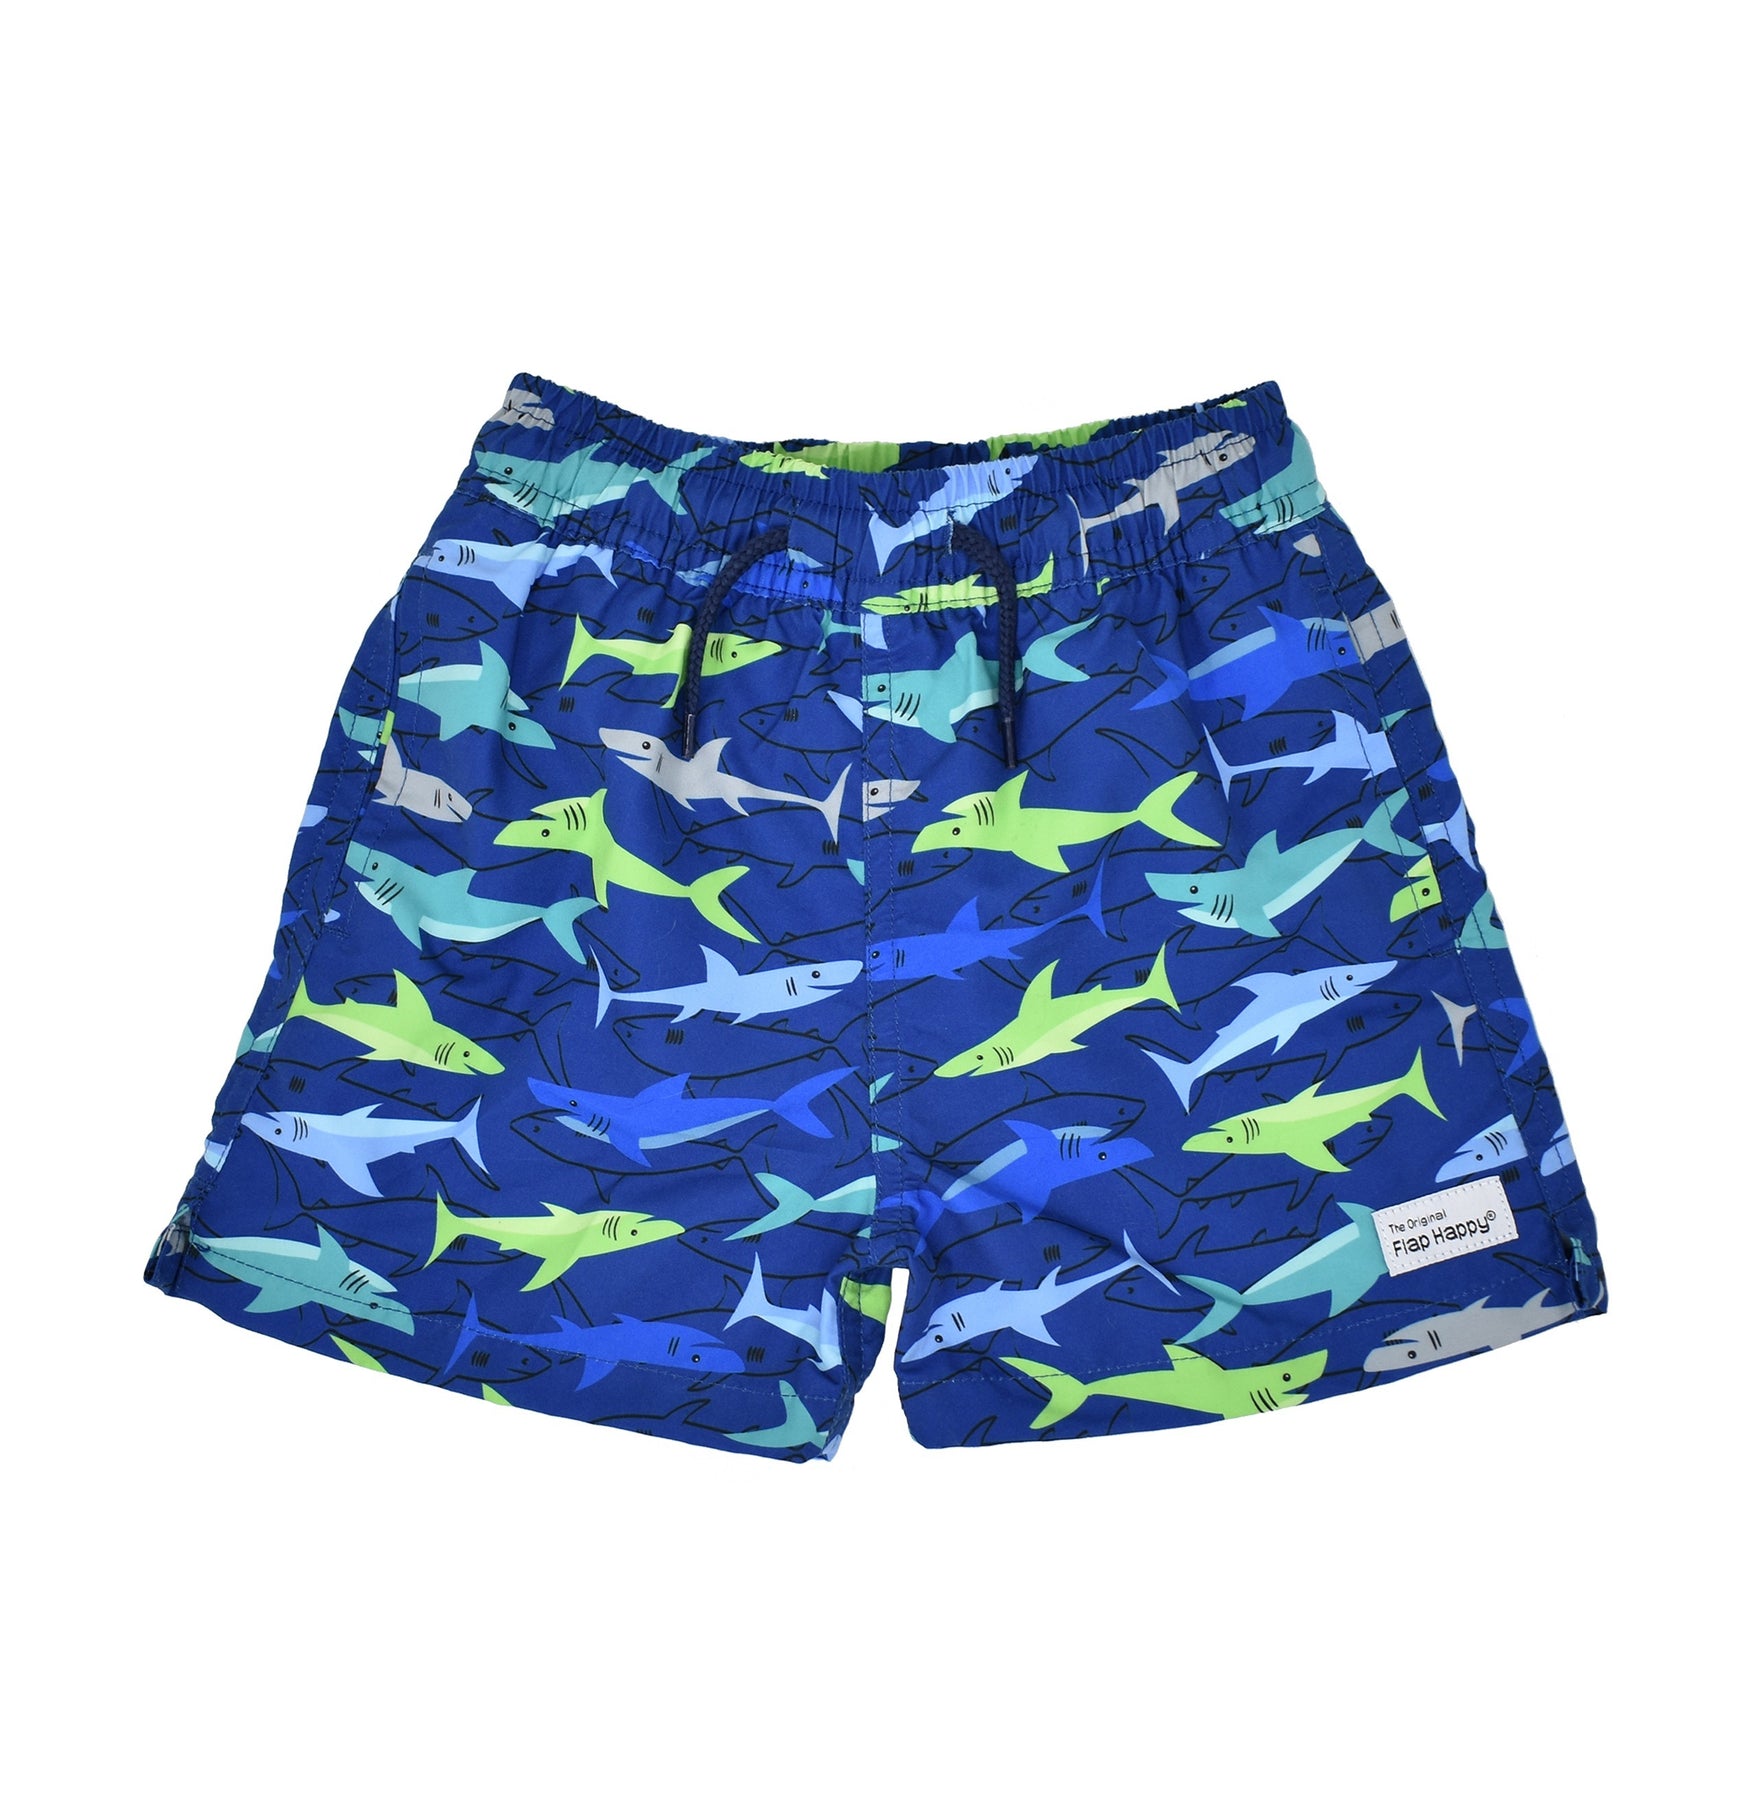 Girls Recycled Nylon UPF 50+ Swim Boy Shorts | Red